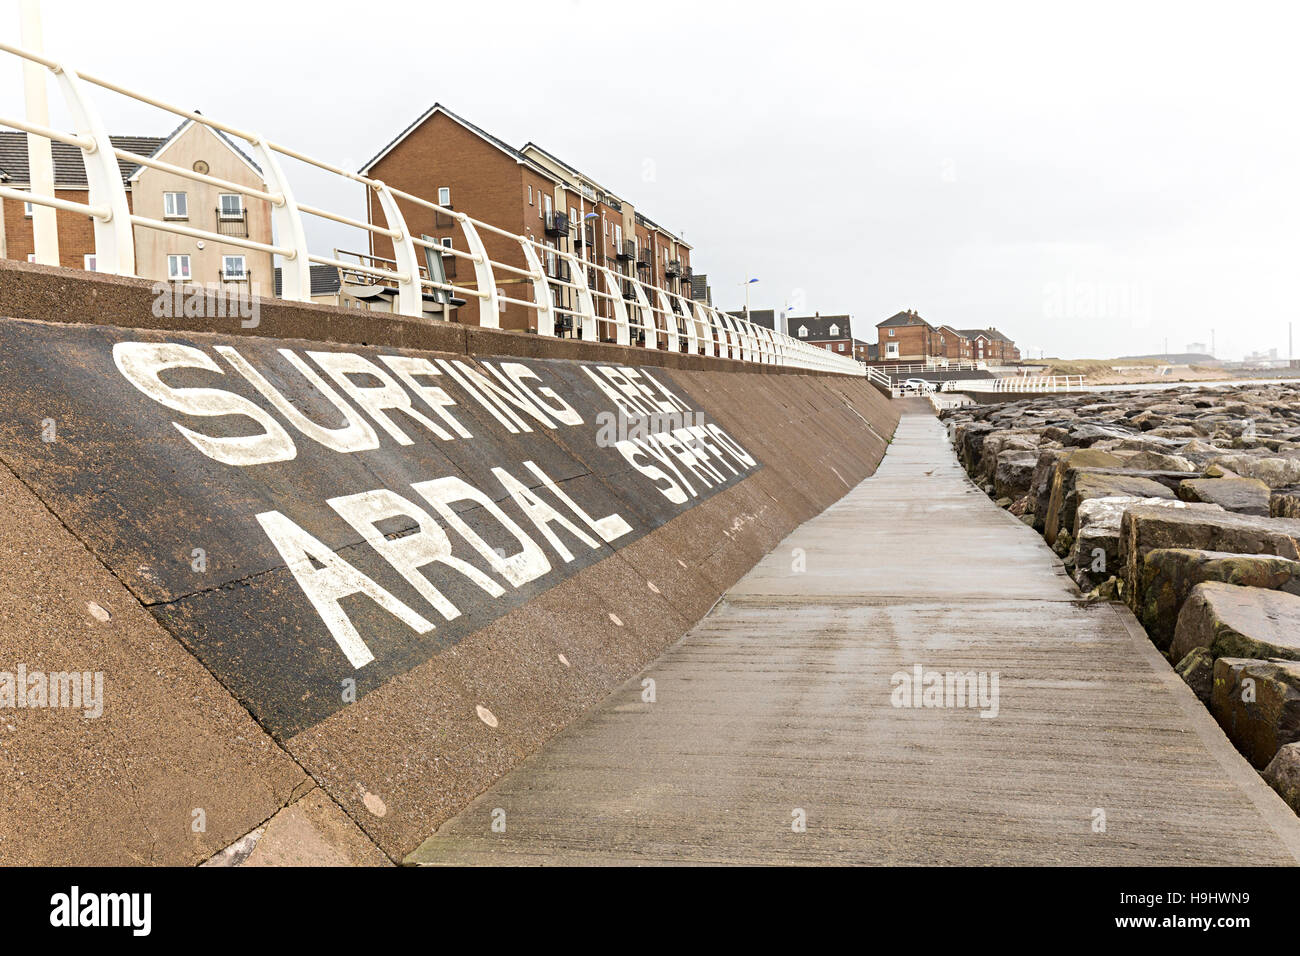 Surf signe sur front de mer, Aberavon, Pays de Galles, Royaume-Uni Banque D'Images